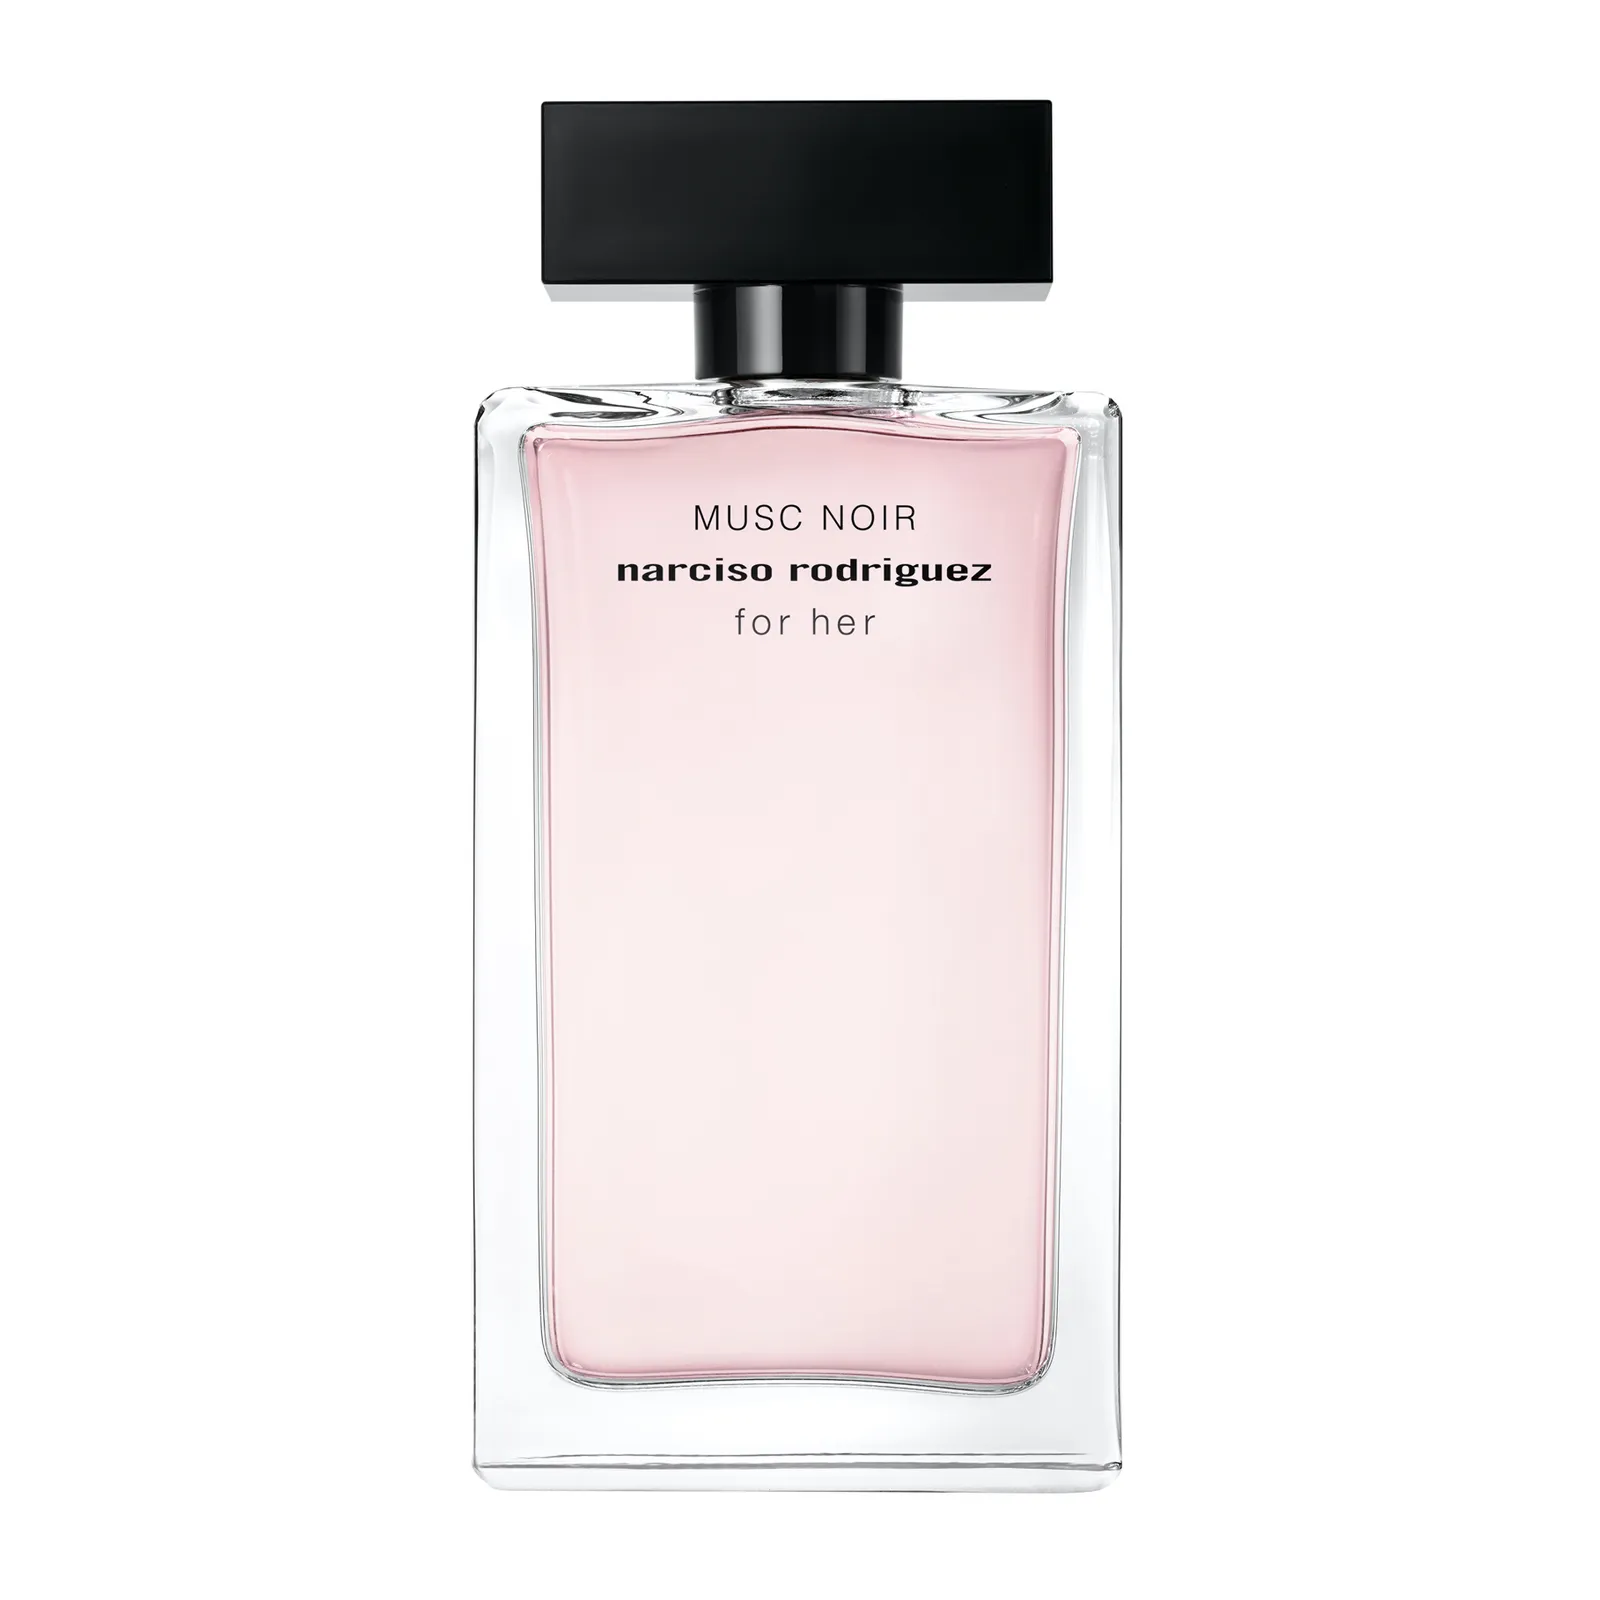 Narciso Rodriguez Musc Noir for Her Eau de Parfum